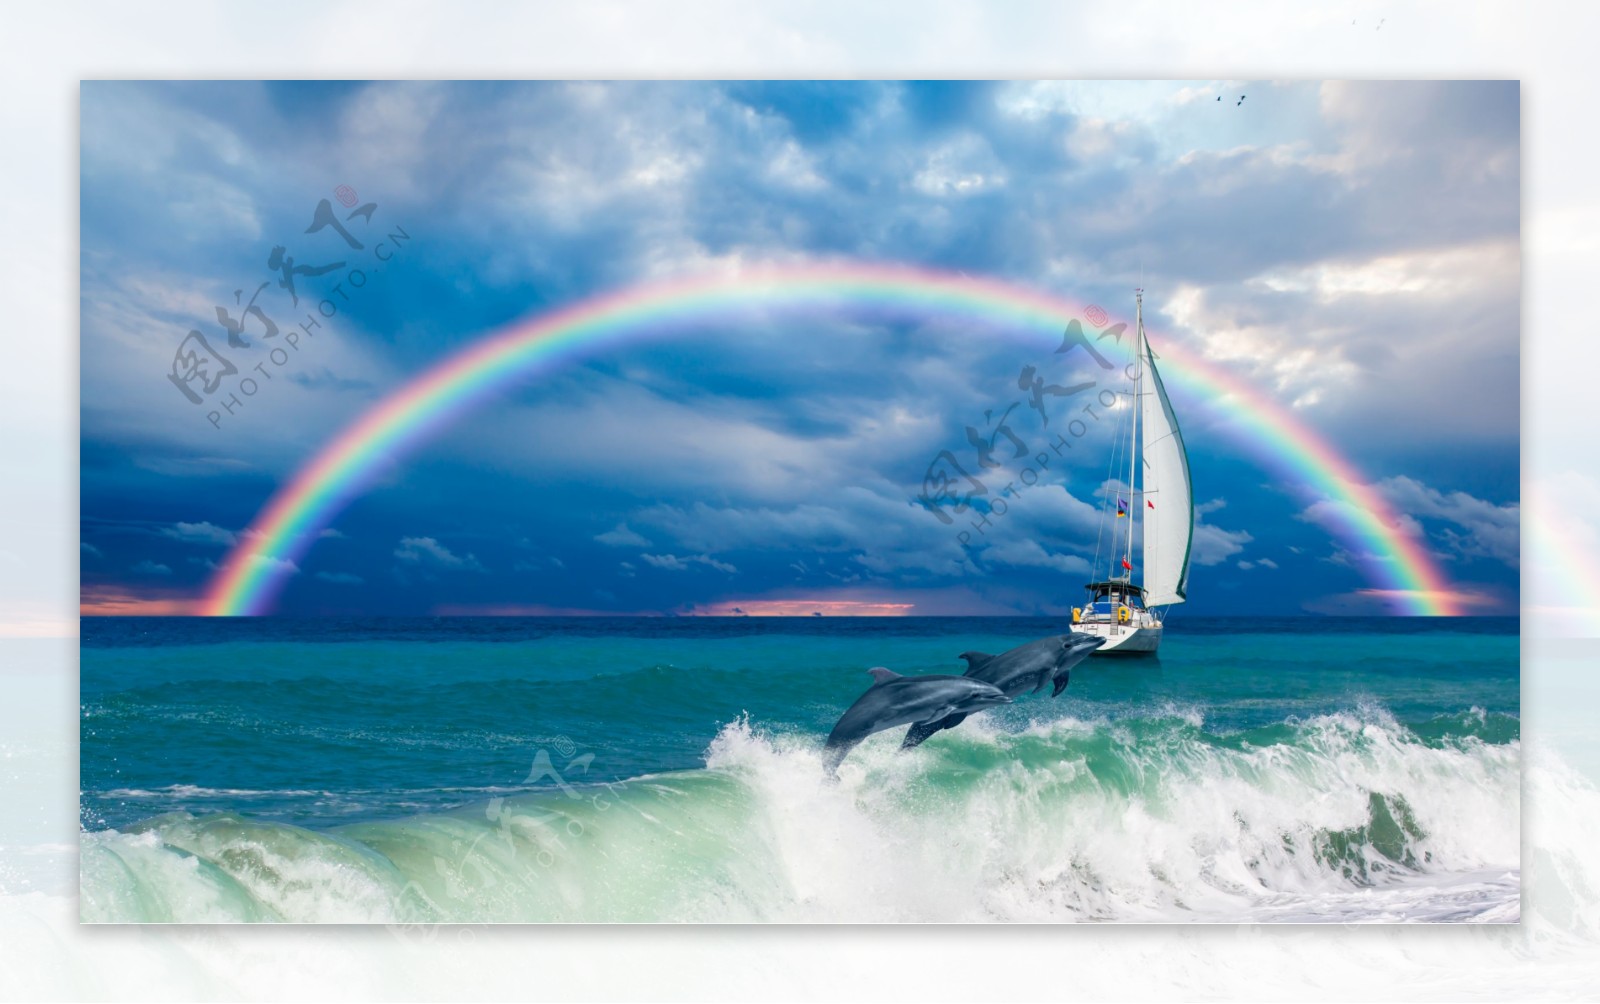 海上彩虹图片大全真实,最美的彩虹在海边图片 - 伤感说说吧